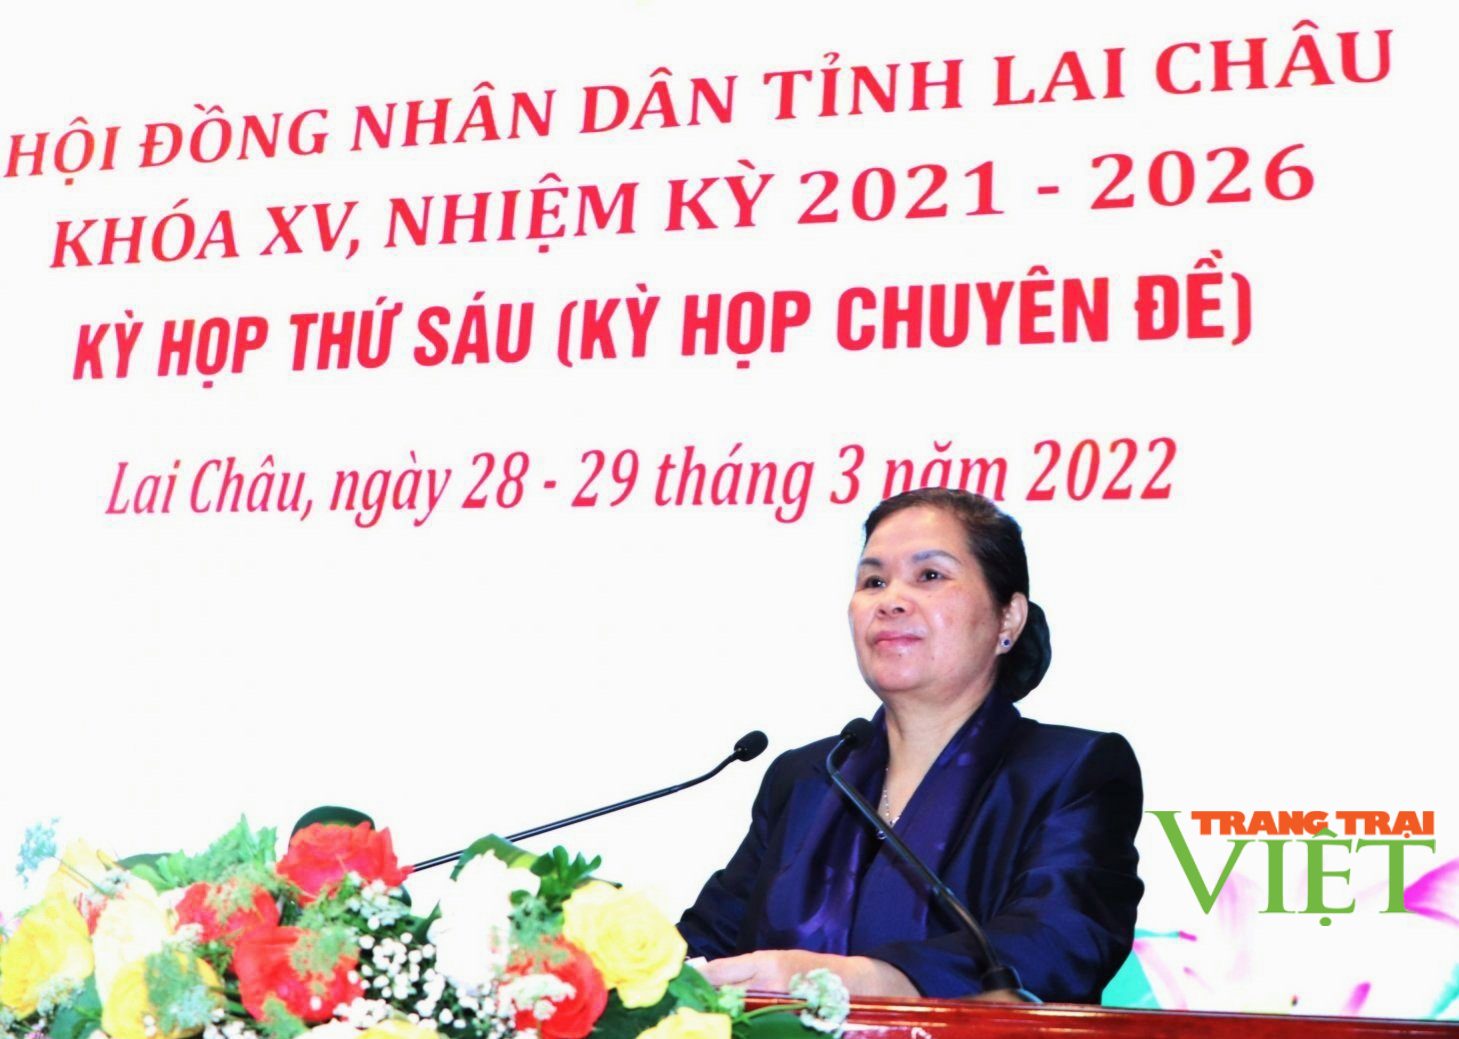 Kỳ họp thứ sáu HĐND tỉnh Lai Châu: Thông qua 12 nghị quyết   - Ảnh 3.